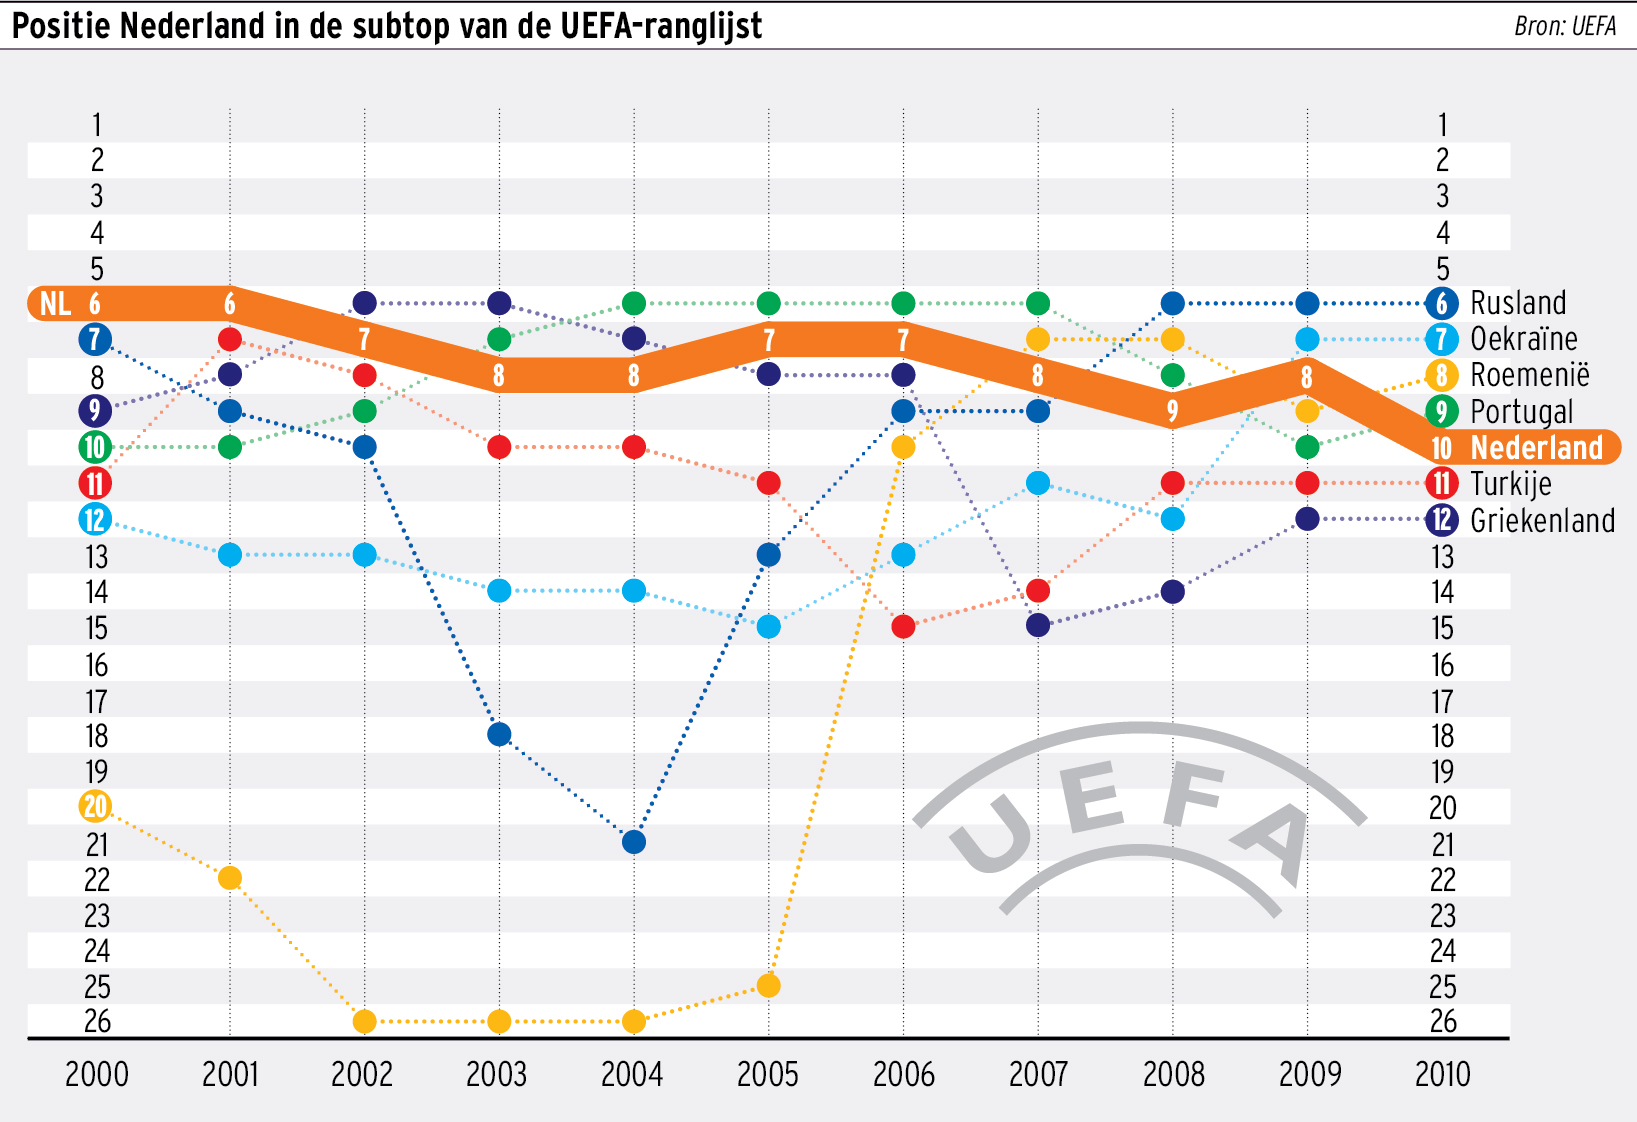 Graphic positie NL op UEFA lijst